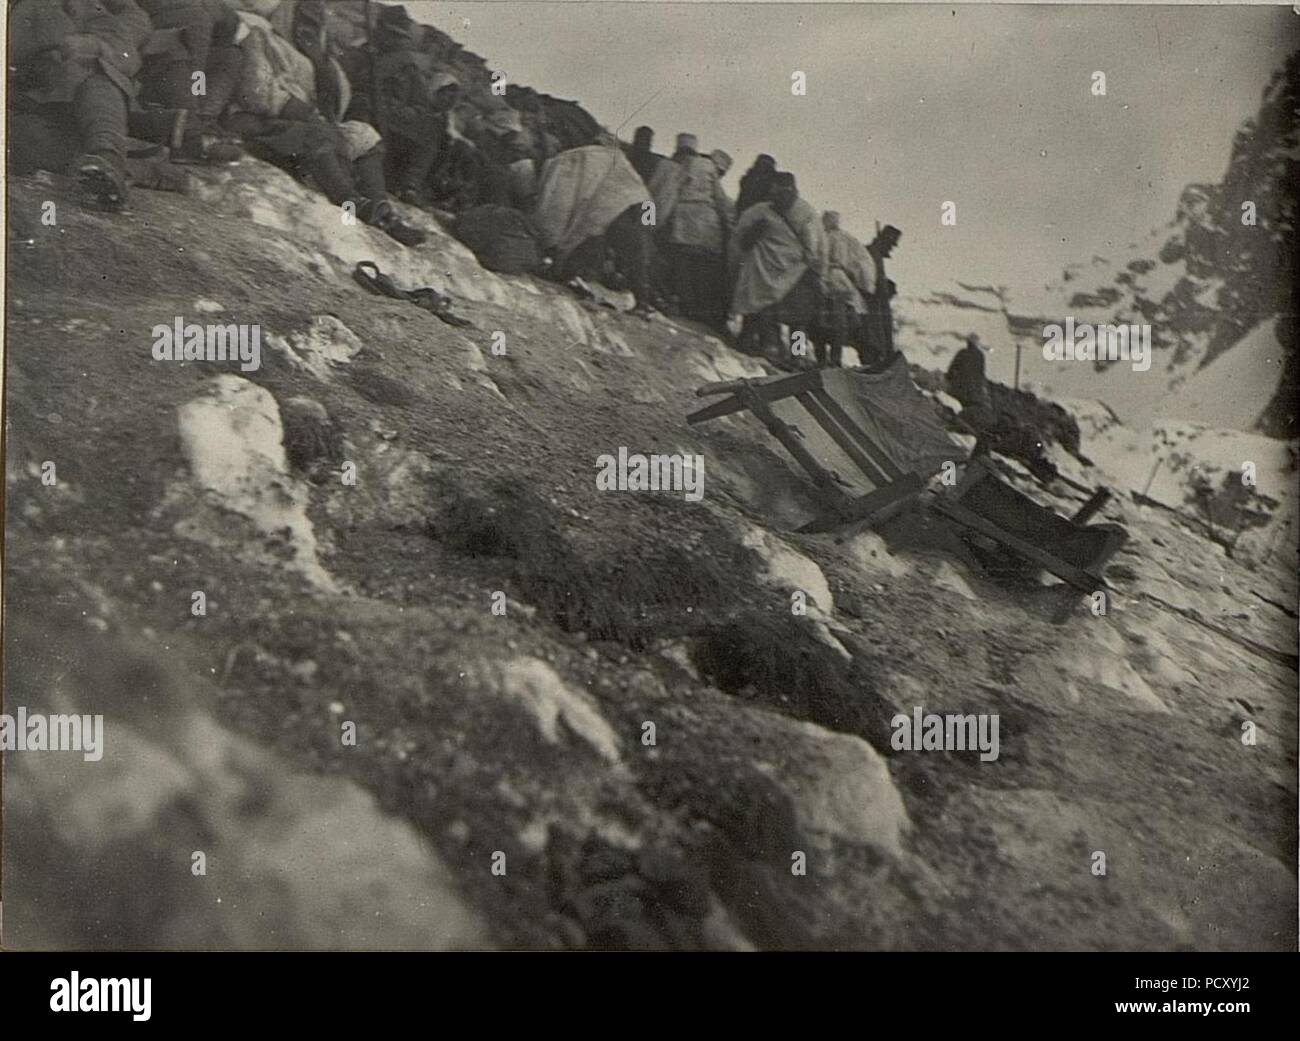 Am Cuklagipfel. Die Mannschaft sucht gegen das Artillerie-Feuer Deckung hinter der italienischen Sandsackmauer. Stock Photo